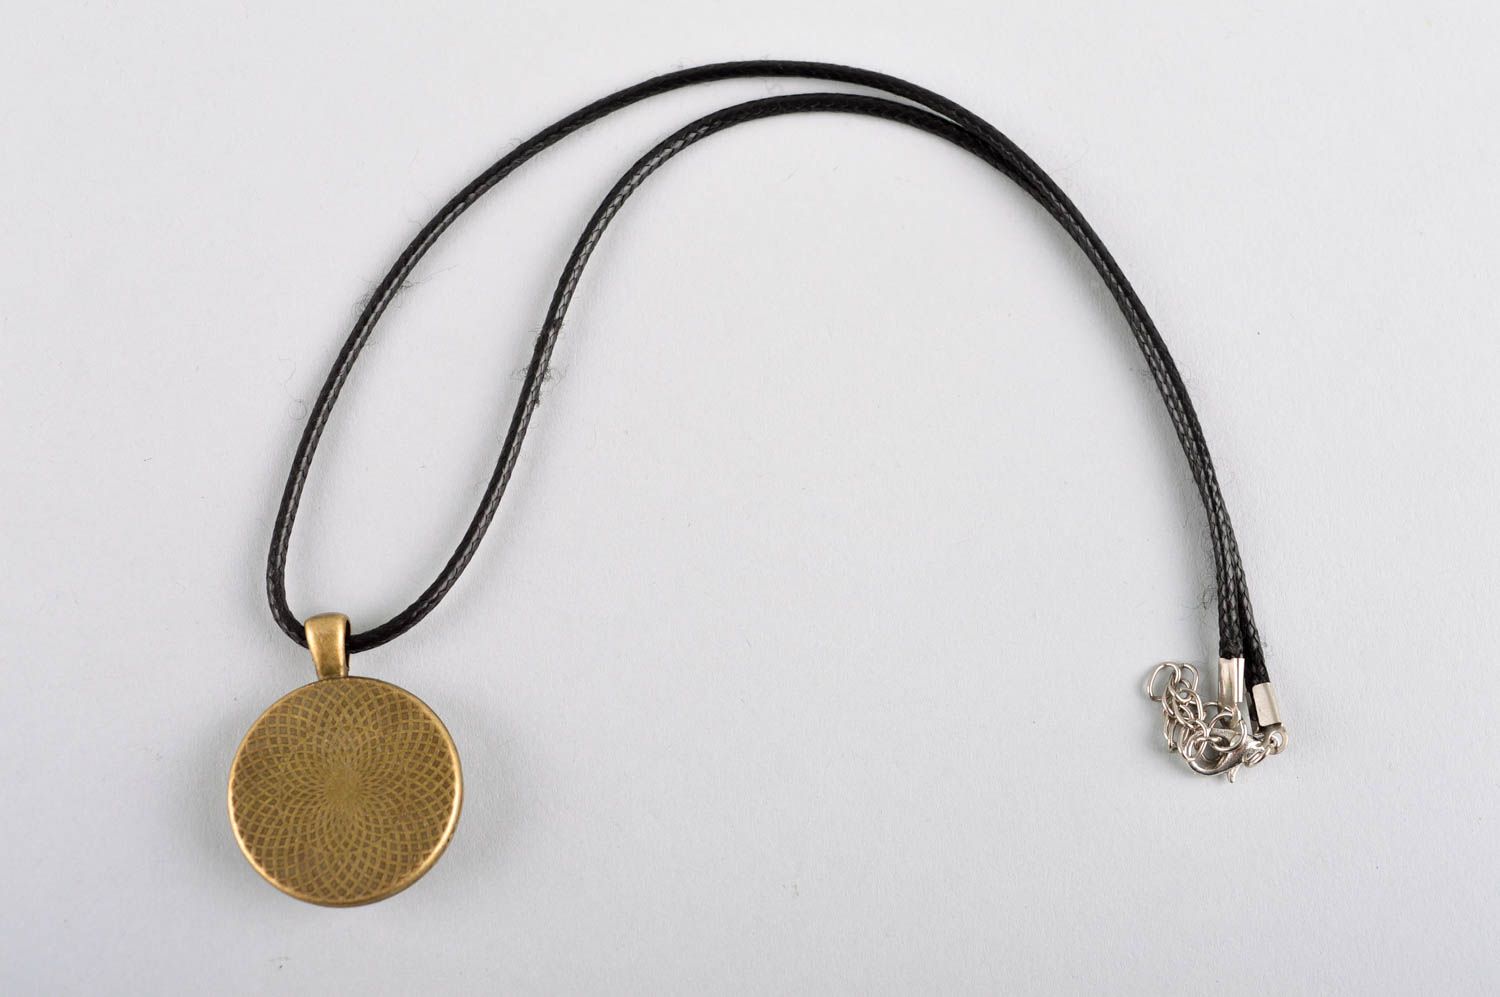 Handmade pendant on cord designer accessories for women glass pendant for women photo 4